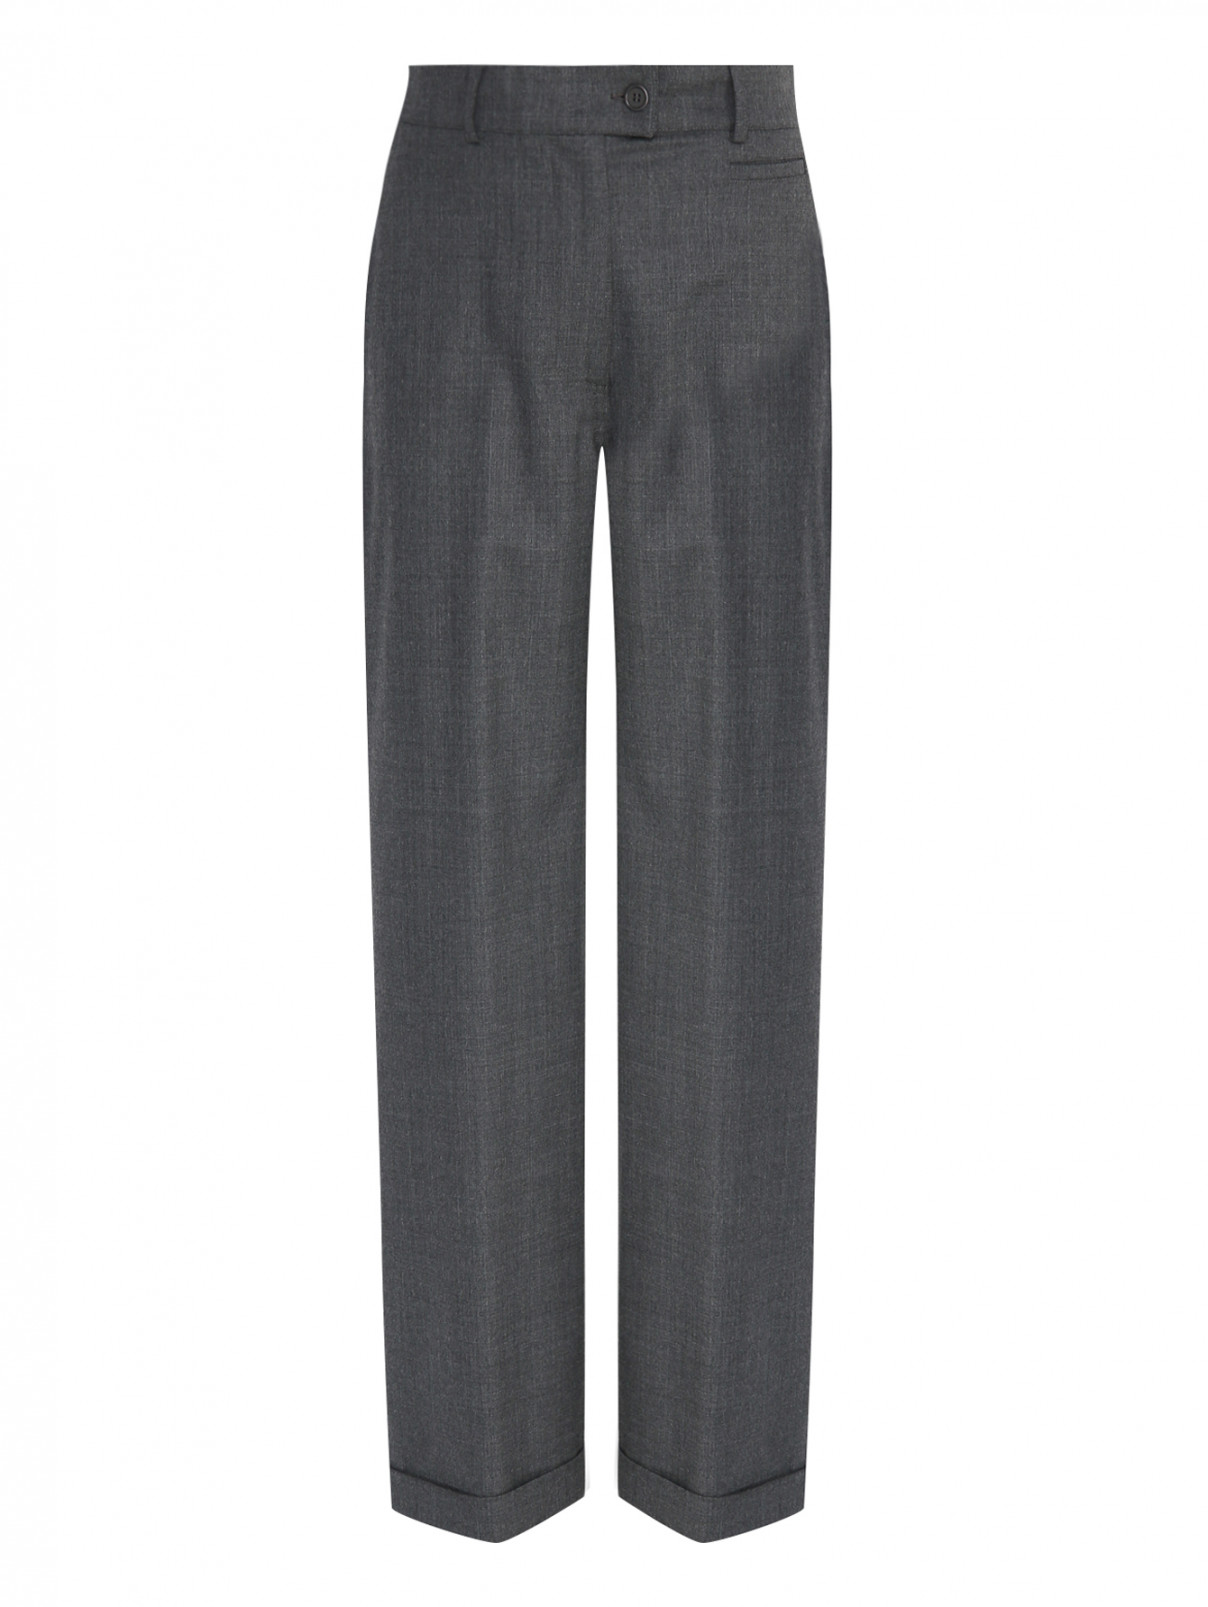 Широкие брюки из шерсти с карманами Aspesi  –  Общий вид  – Цвет:  Серый